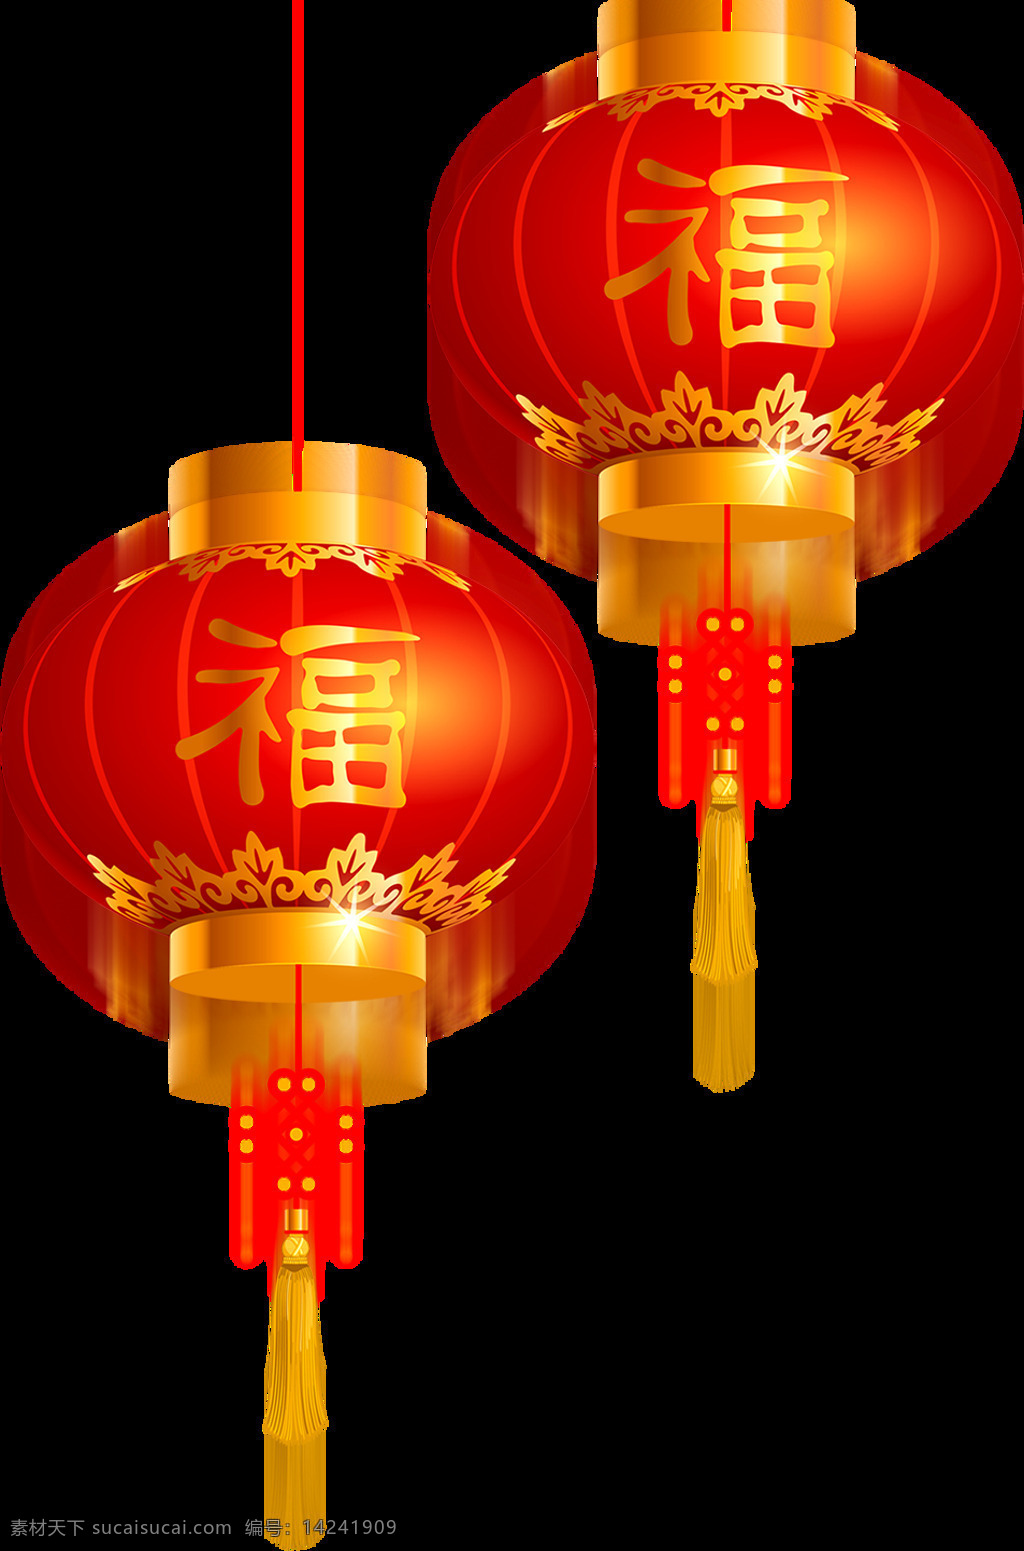 欢快 大红色 喜庆 灯笼 节日 元素 欢快气氛 黄色福字 黄色麦穗 节日元素 中国结 中国元素